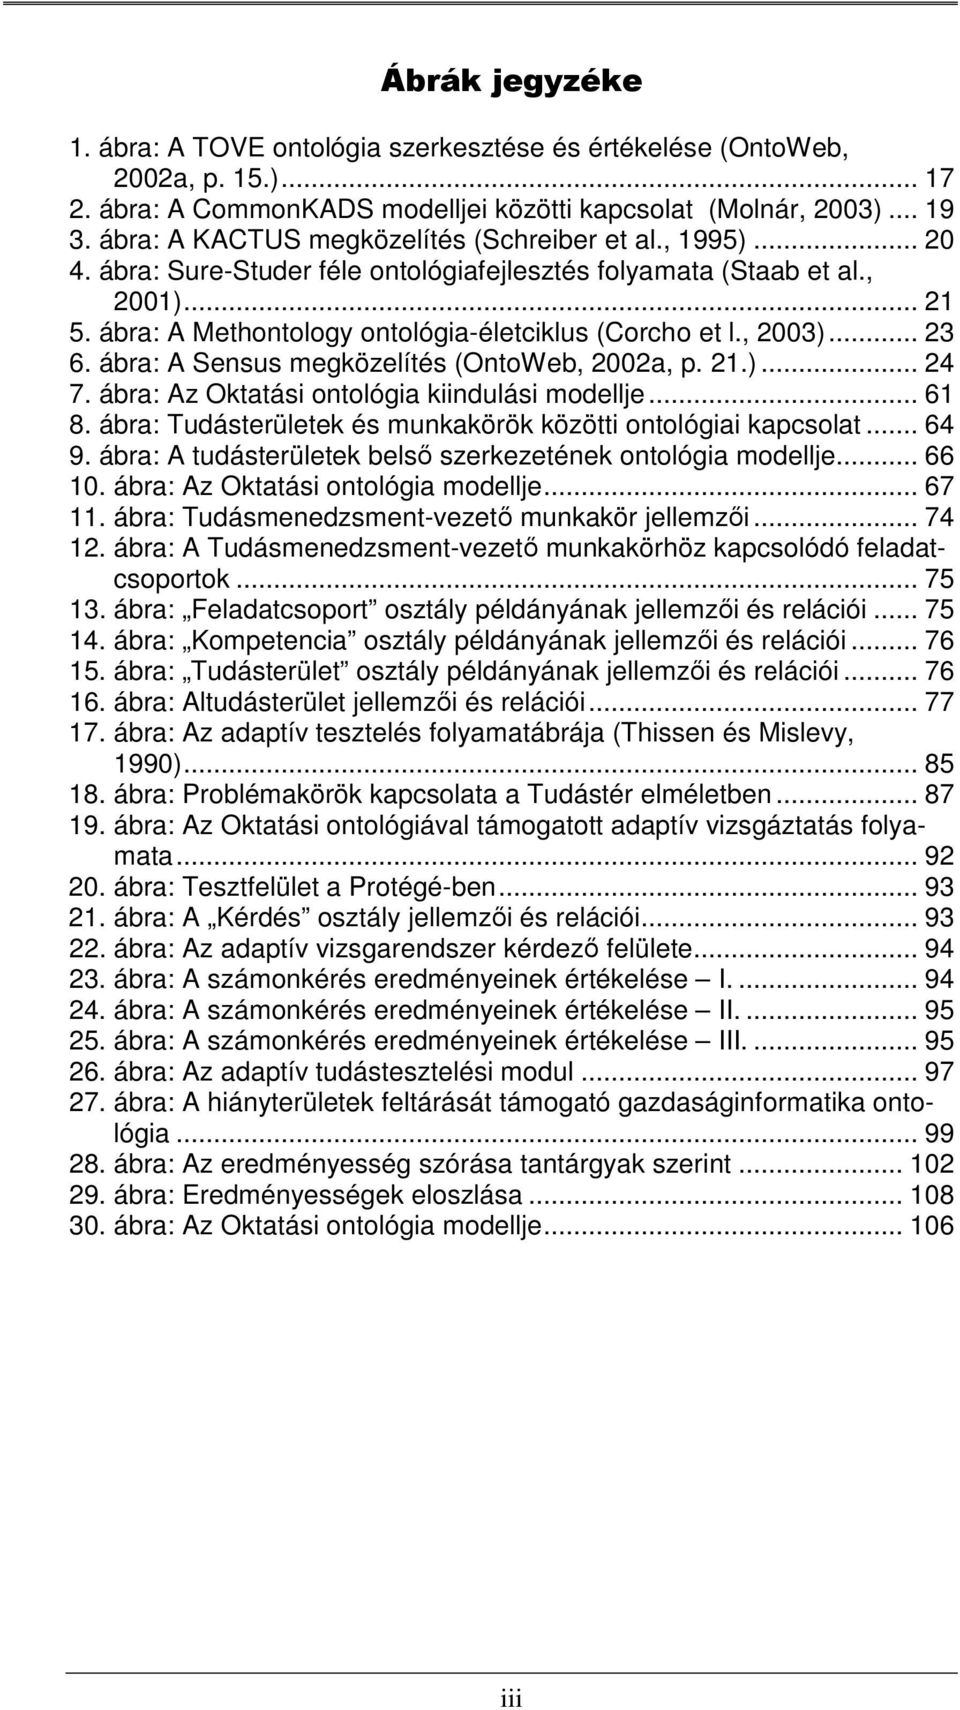 , 2003)... 23 6. ábra: A Sensus megközelítés (OntoWeb, 2002a, p. 21.)... 24 7. ábra: Az Oktatási ontológia kiindulási modellje... 61 8. ábra: Tudásterületek és munkakörök közötti ontológiai kapcsolat.